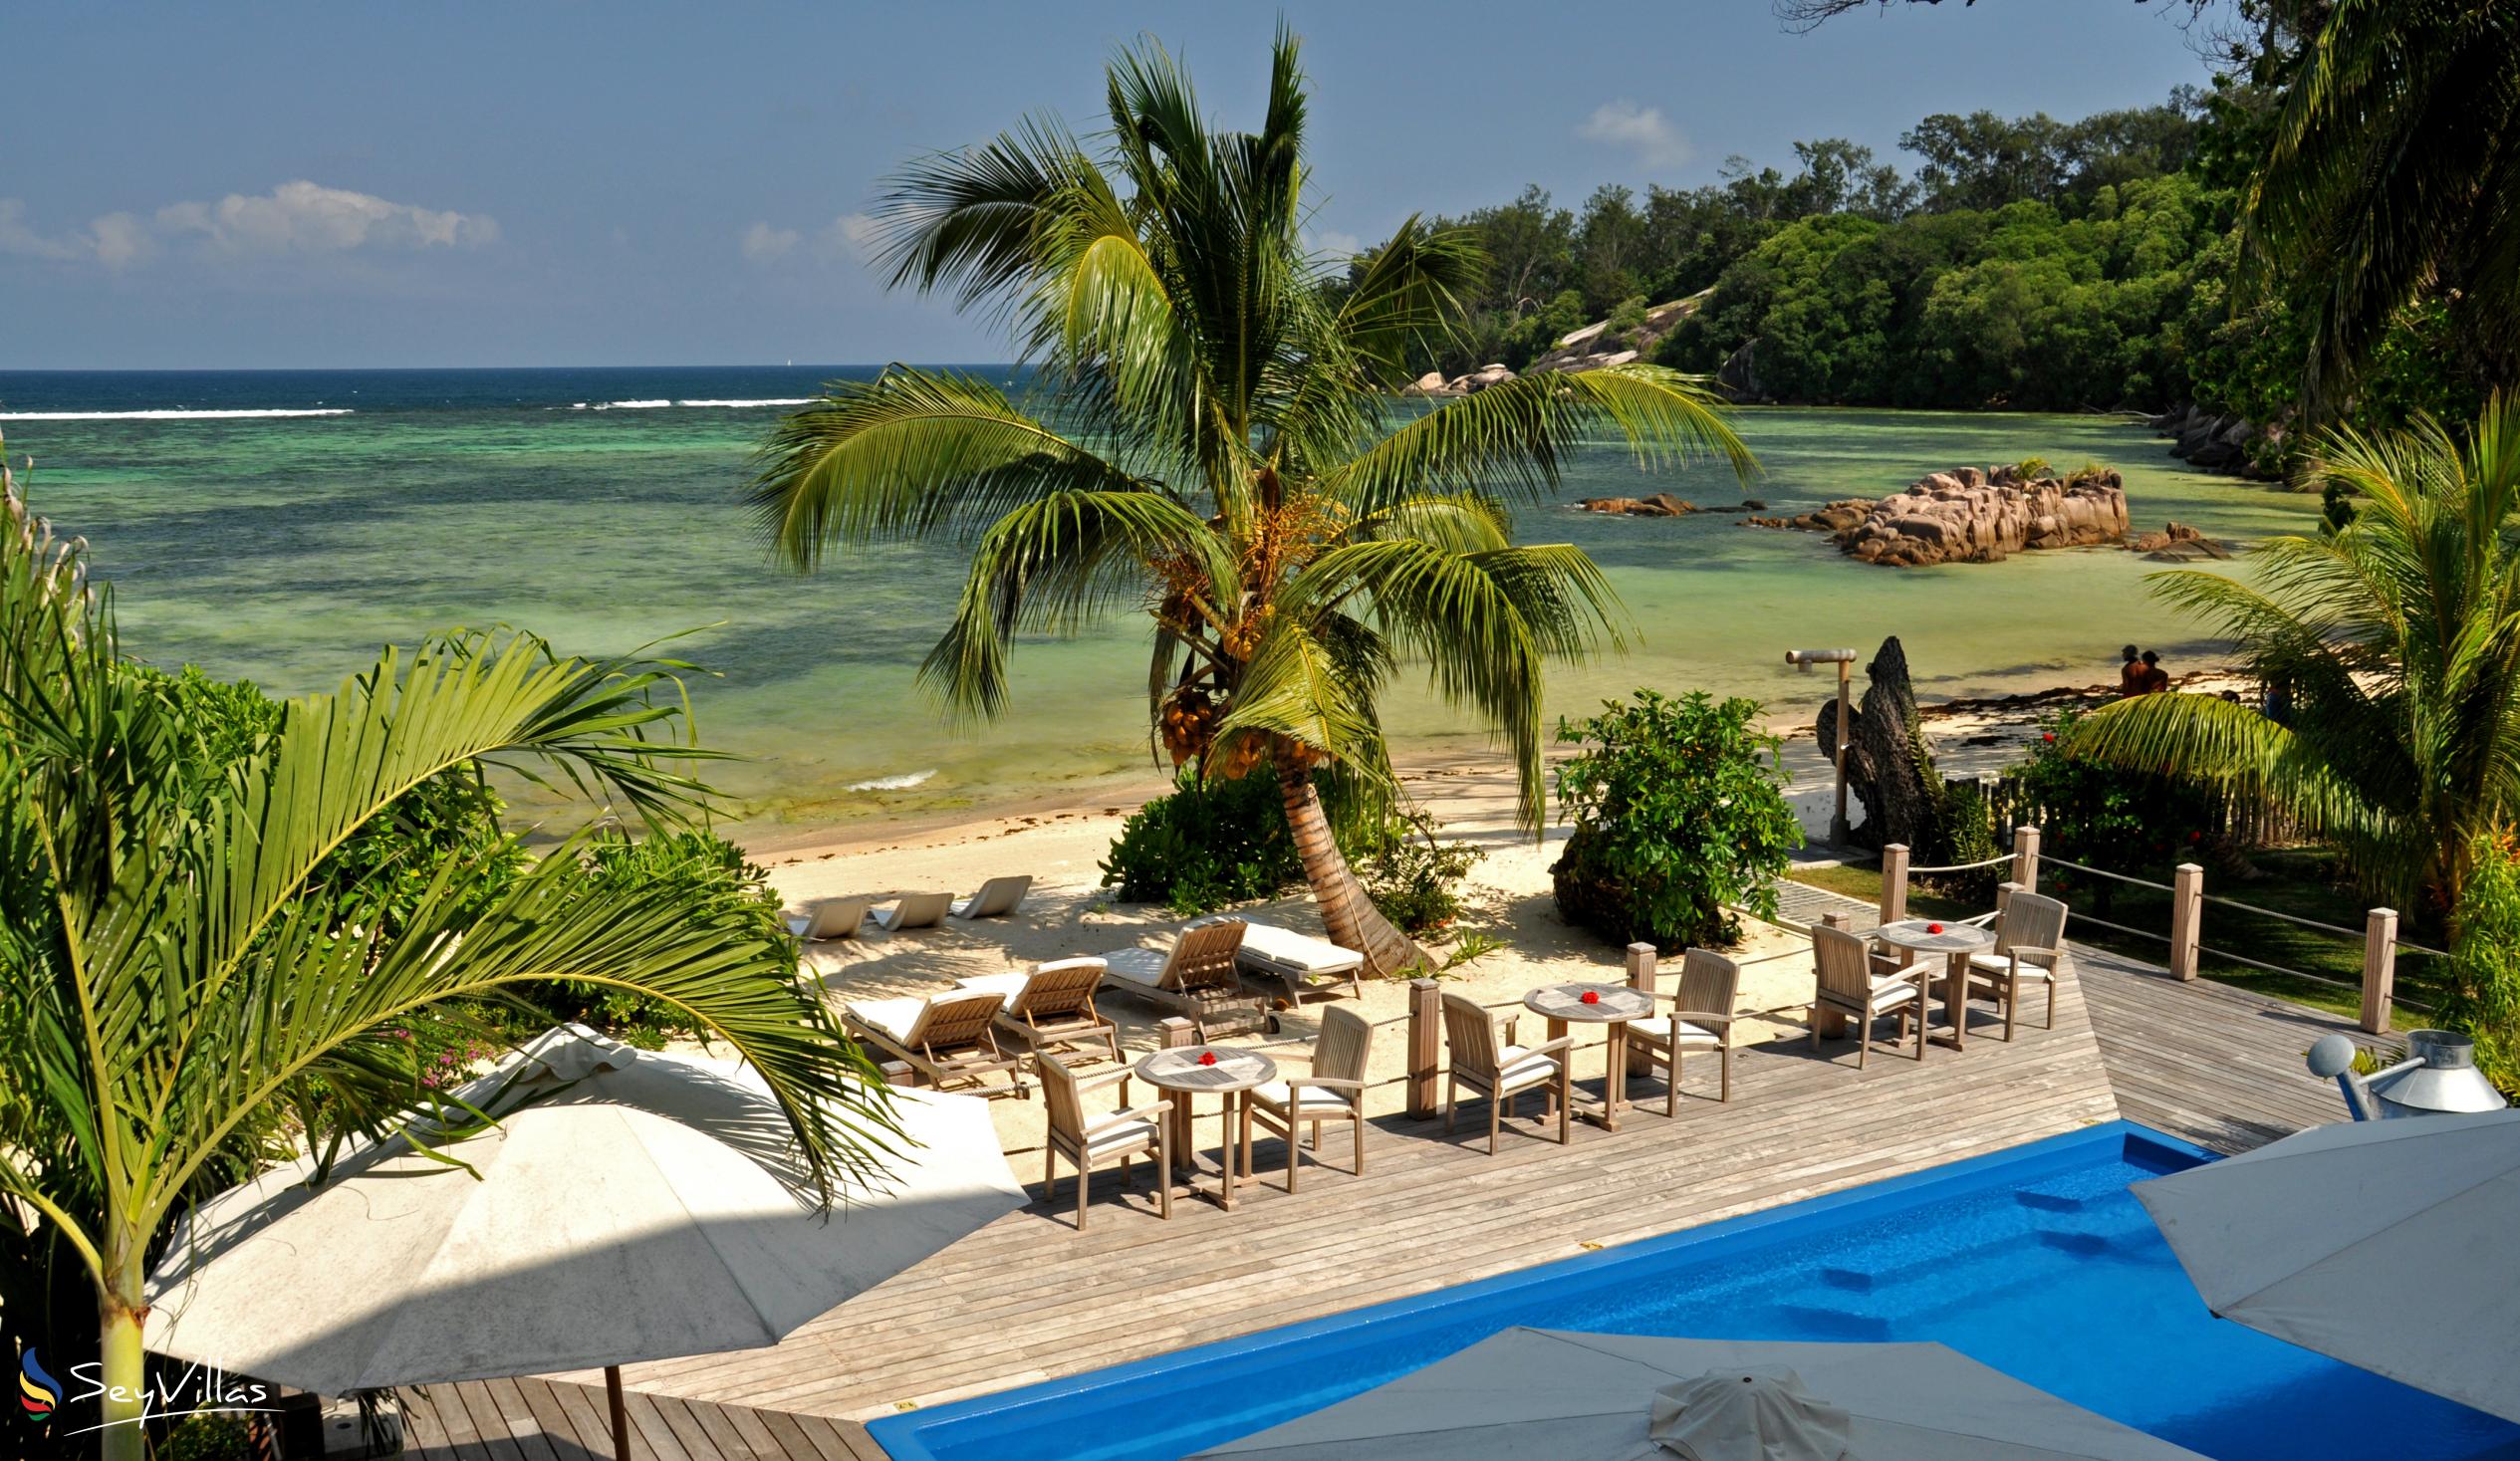 Photo 5: Crown Beach Hotel - Outdoor area - Mahé (Seychelles)